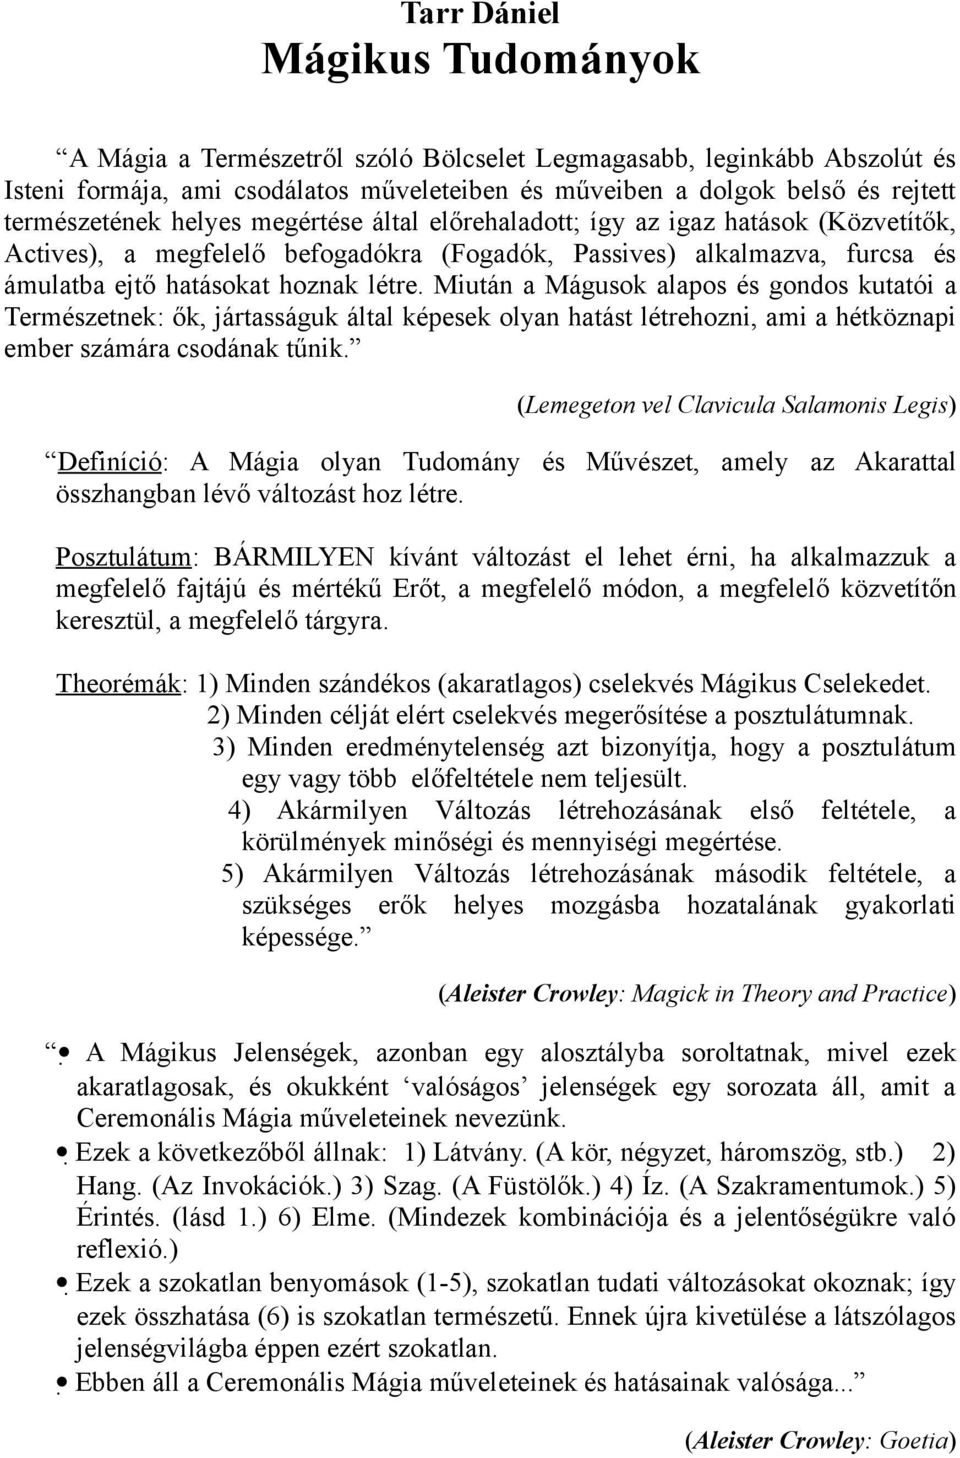 Tarr Dániel Mágikus Tudományok - PDF Ingyenes letöltés